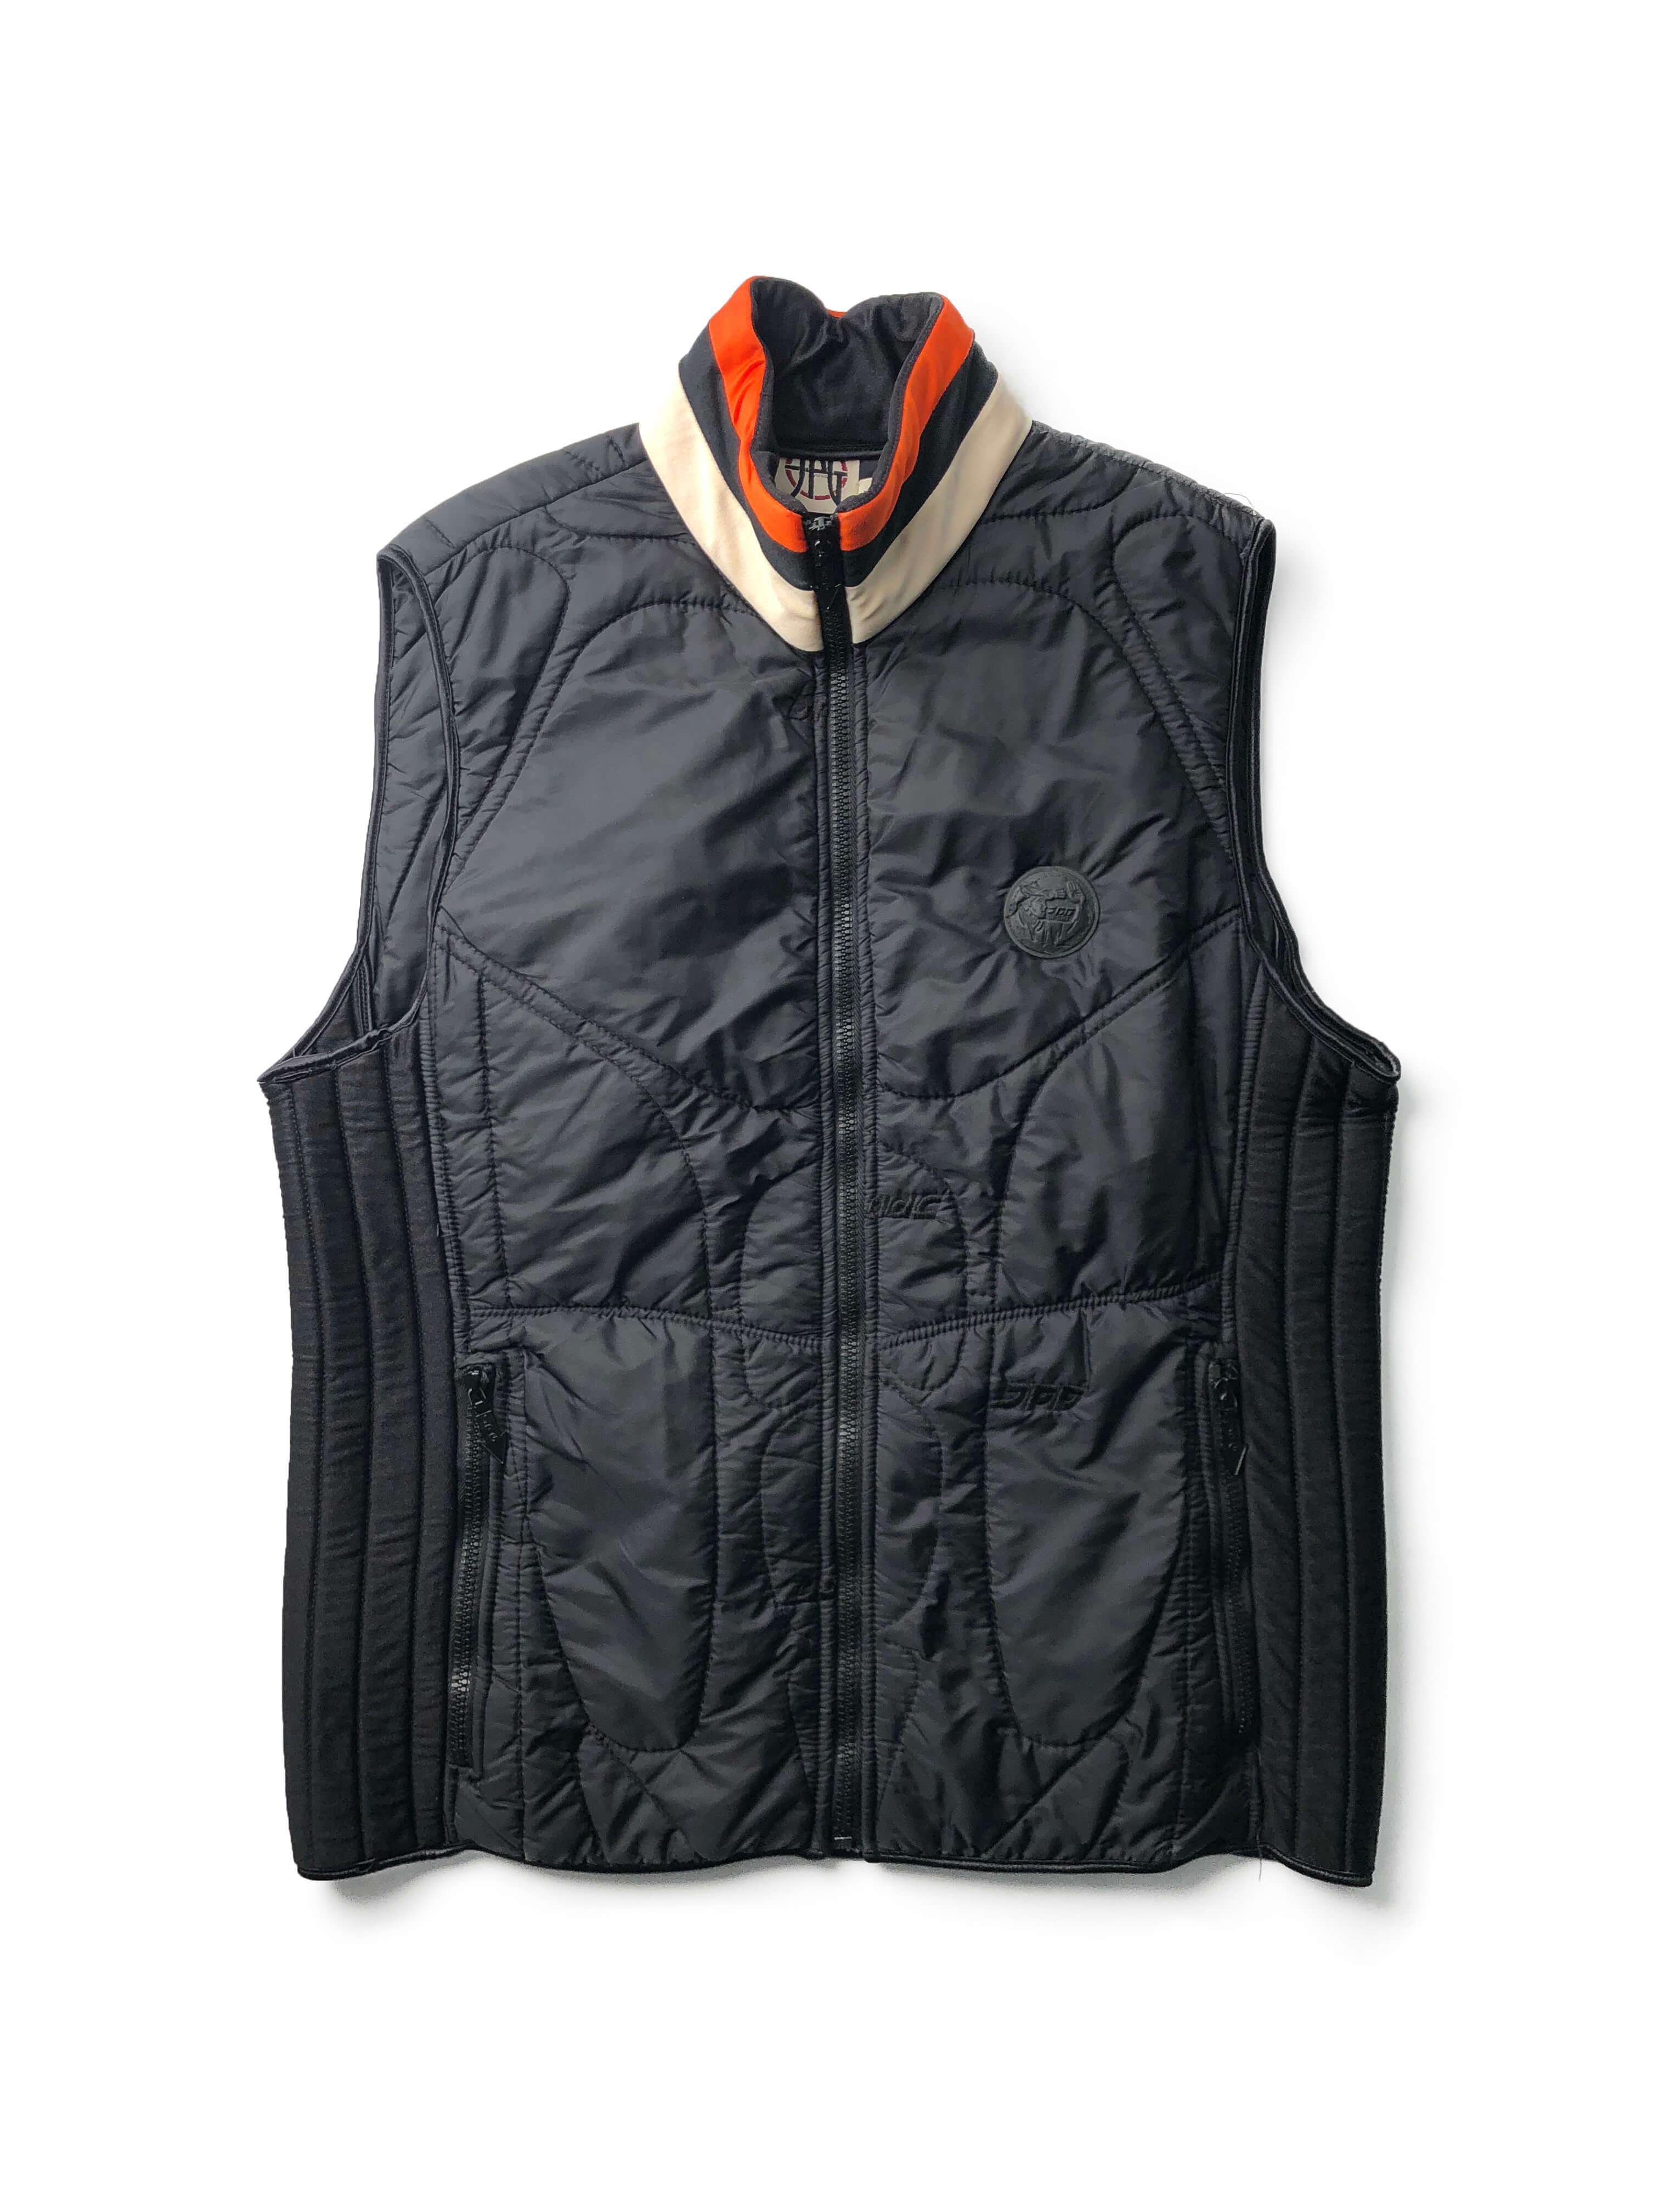 Jean Paul Gaultier 90s muscle vest